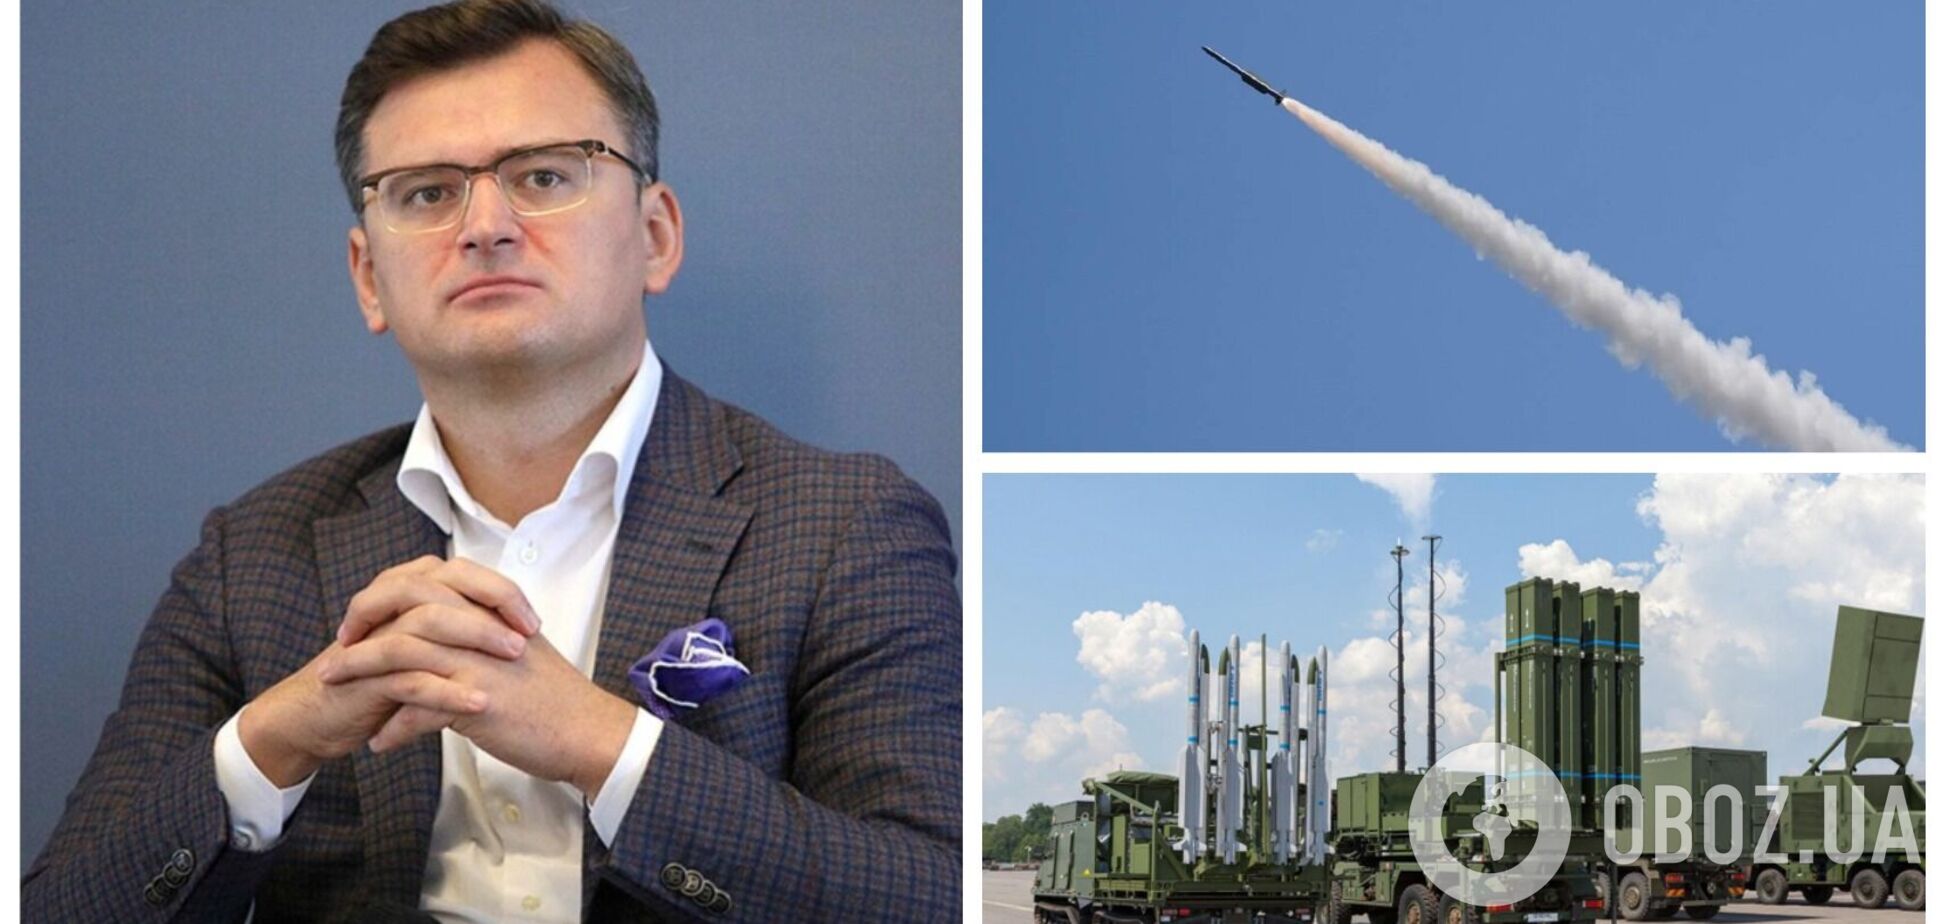 Украина может получить новые системы ПВО и ПРО до конца года, – Кулеба